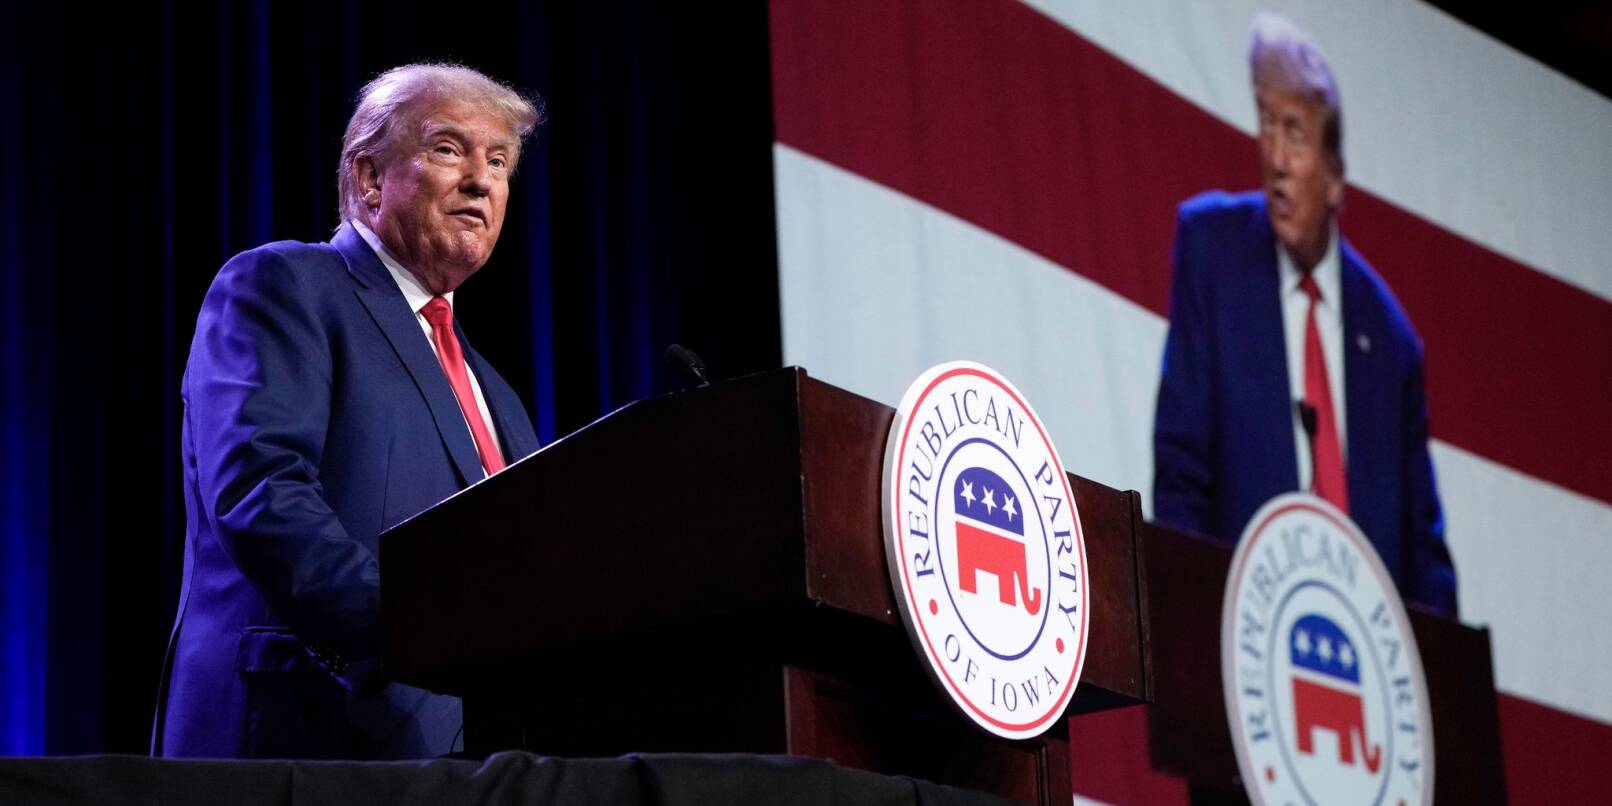 Der ehemalige US-Präsident Donald Trump spricht beim Lincoln Dinner 2023 der Republikanischen Partei von Iowa.